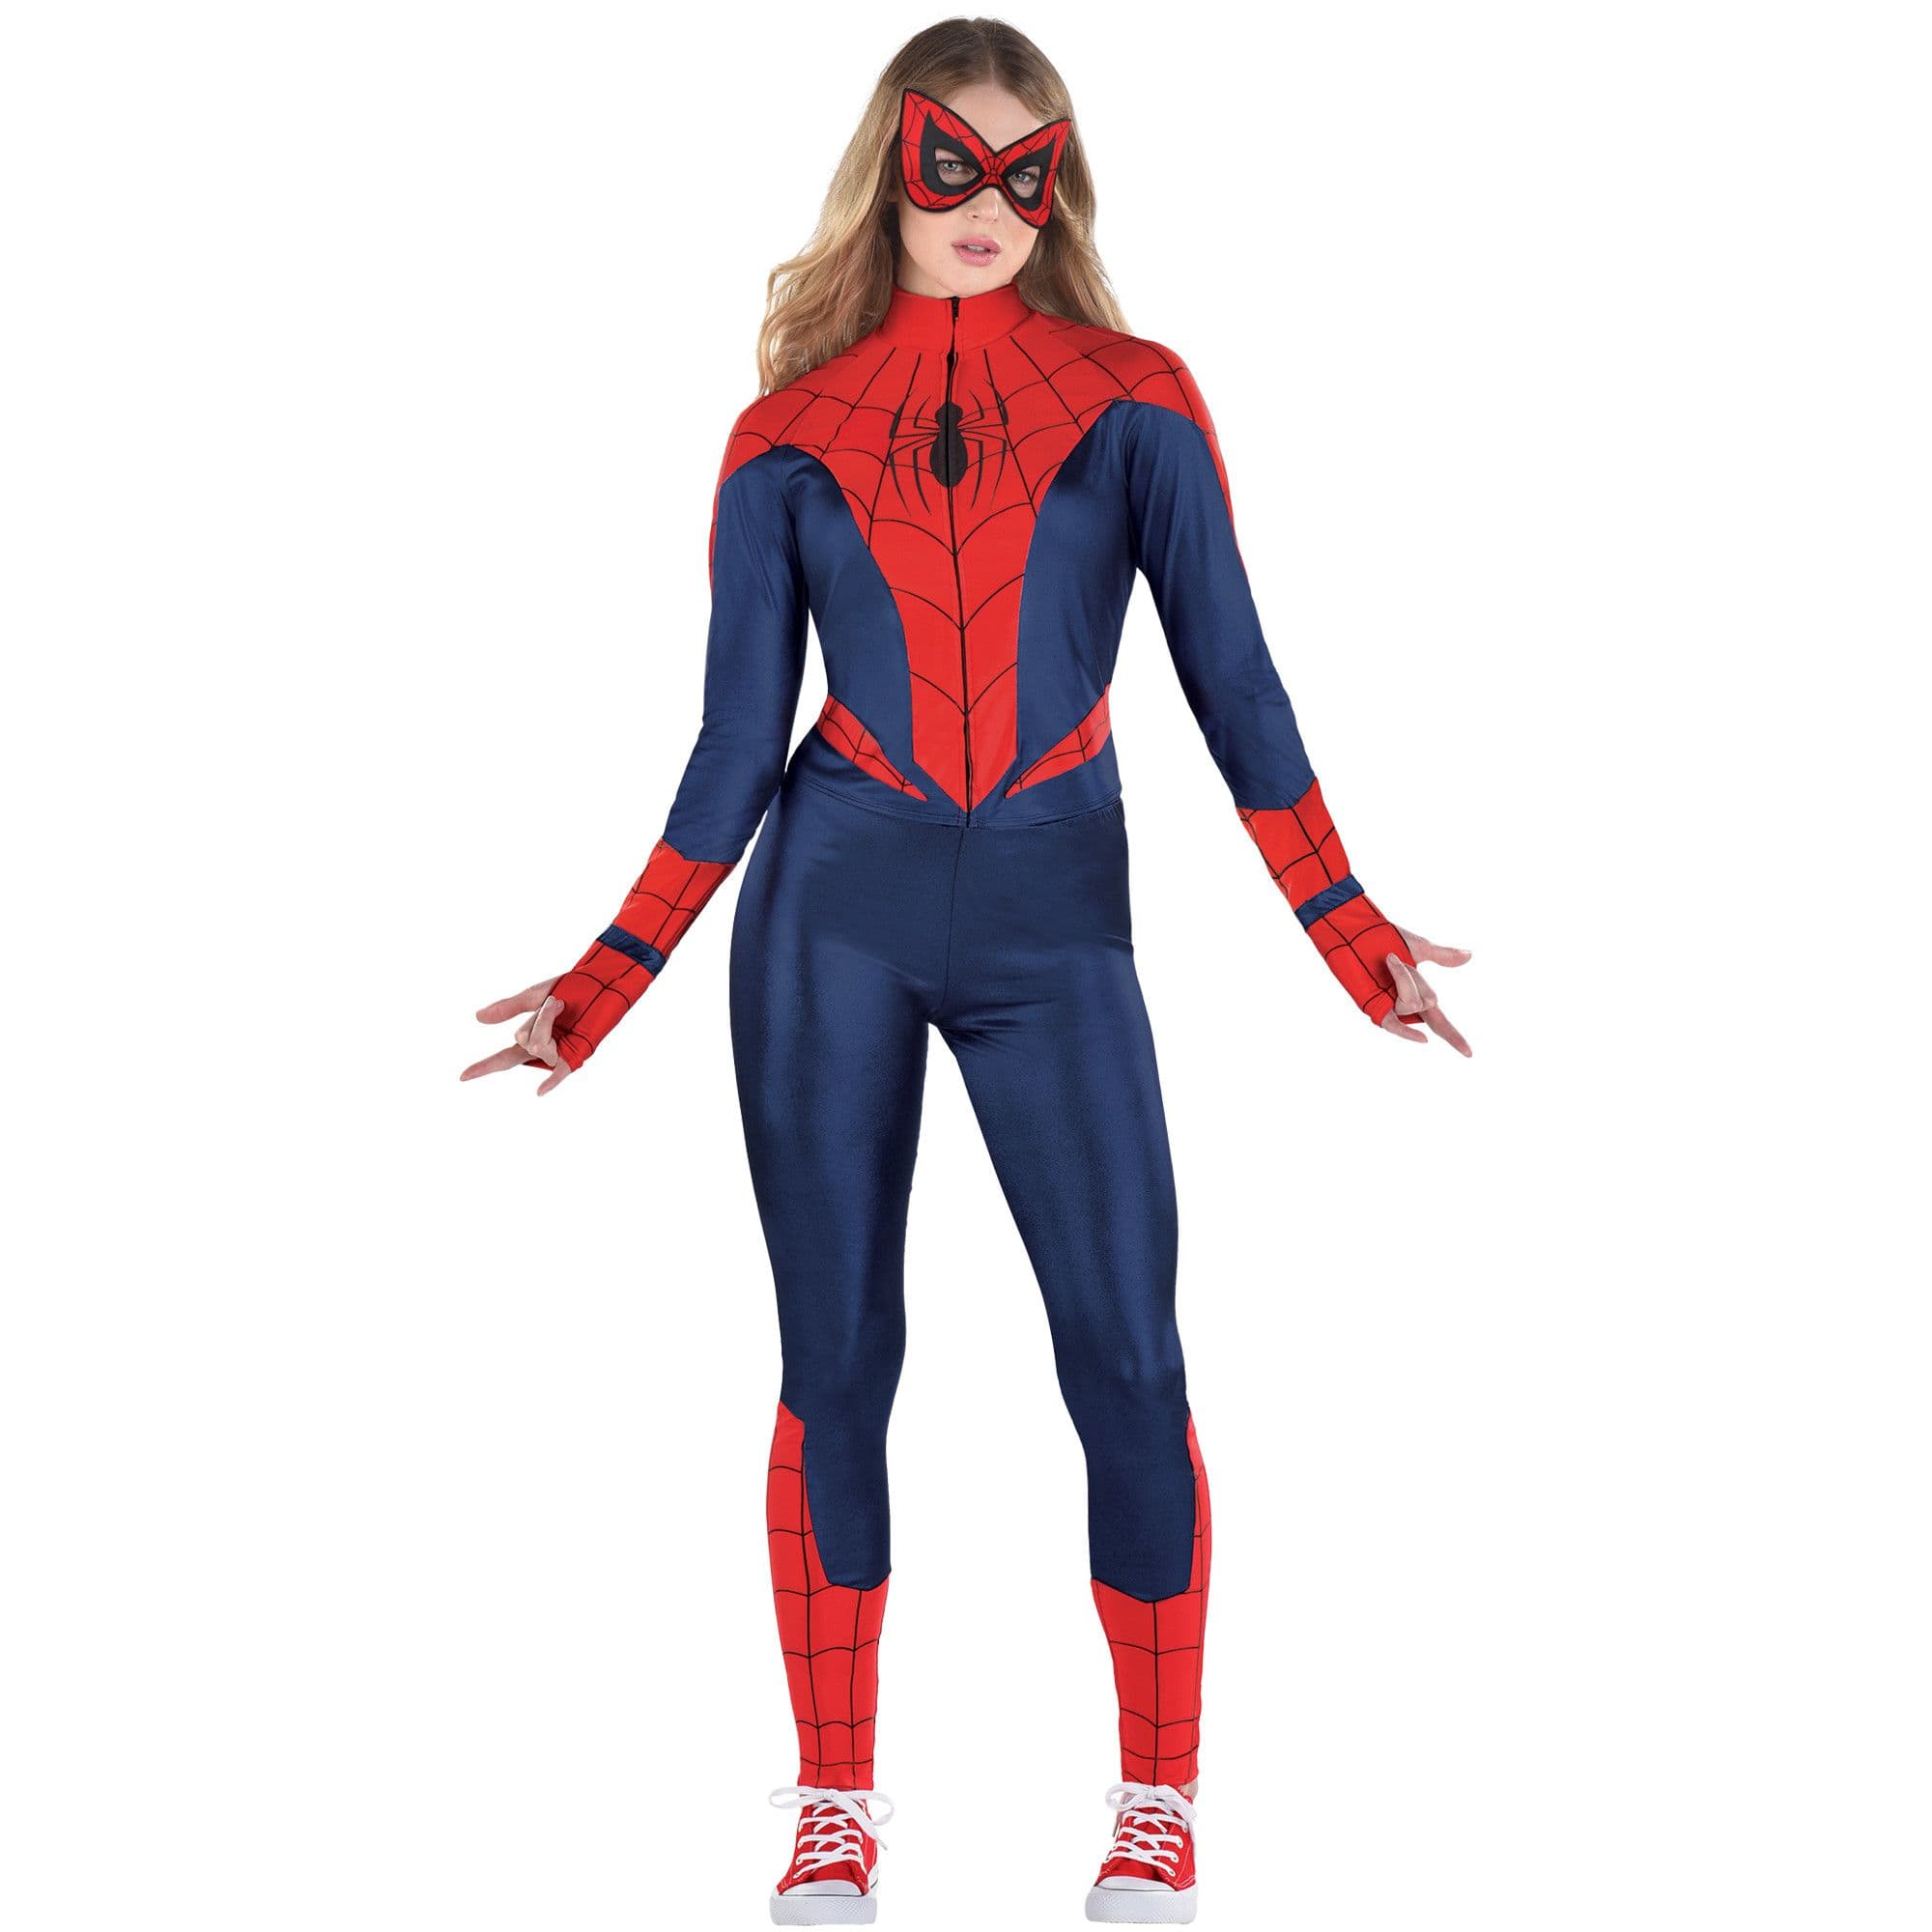 Costume Disney Marvel Spider-Girl, femmes, combinaison gantée bleu